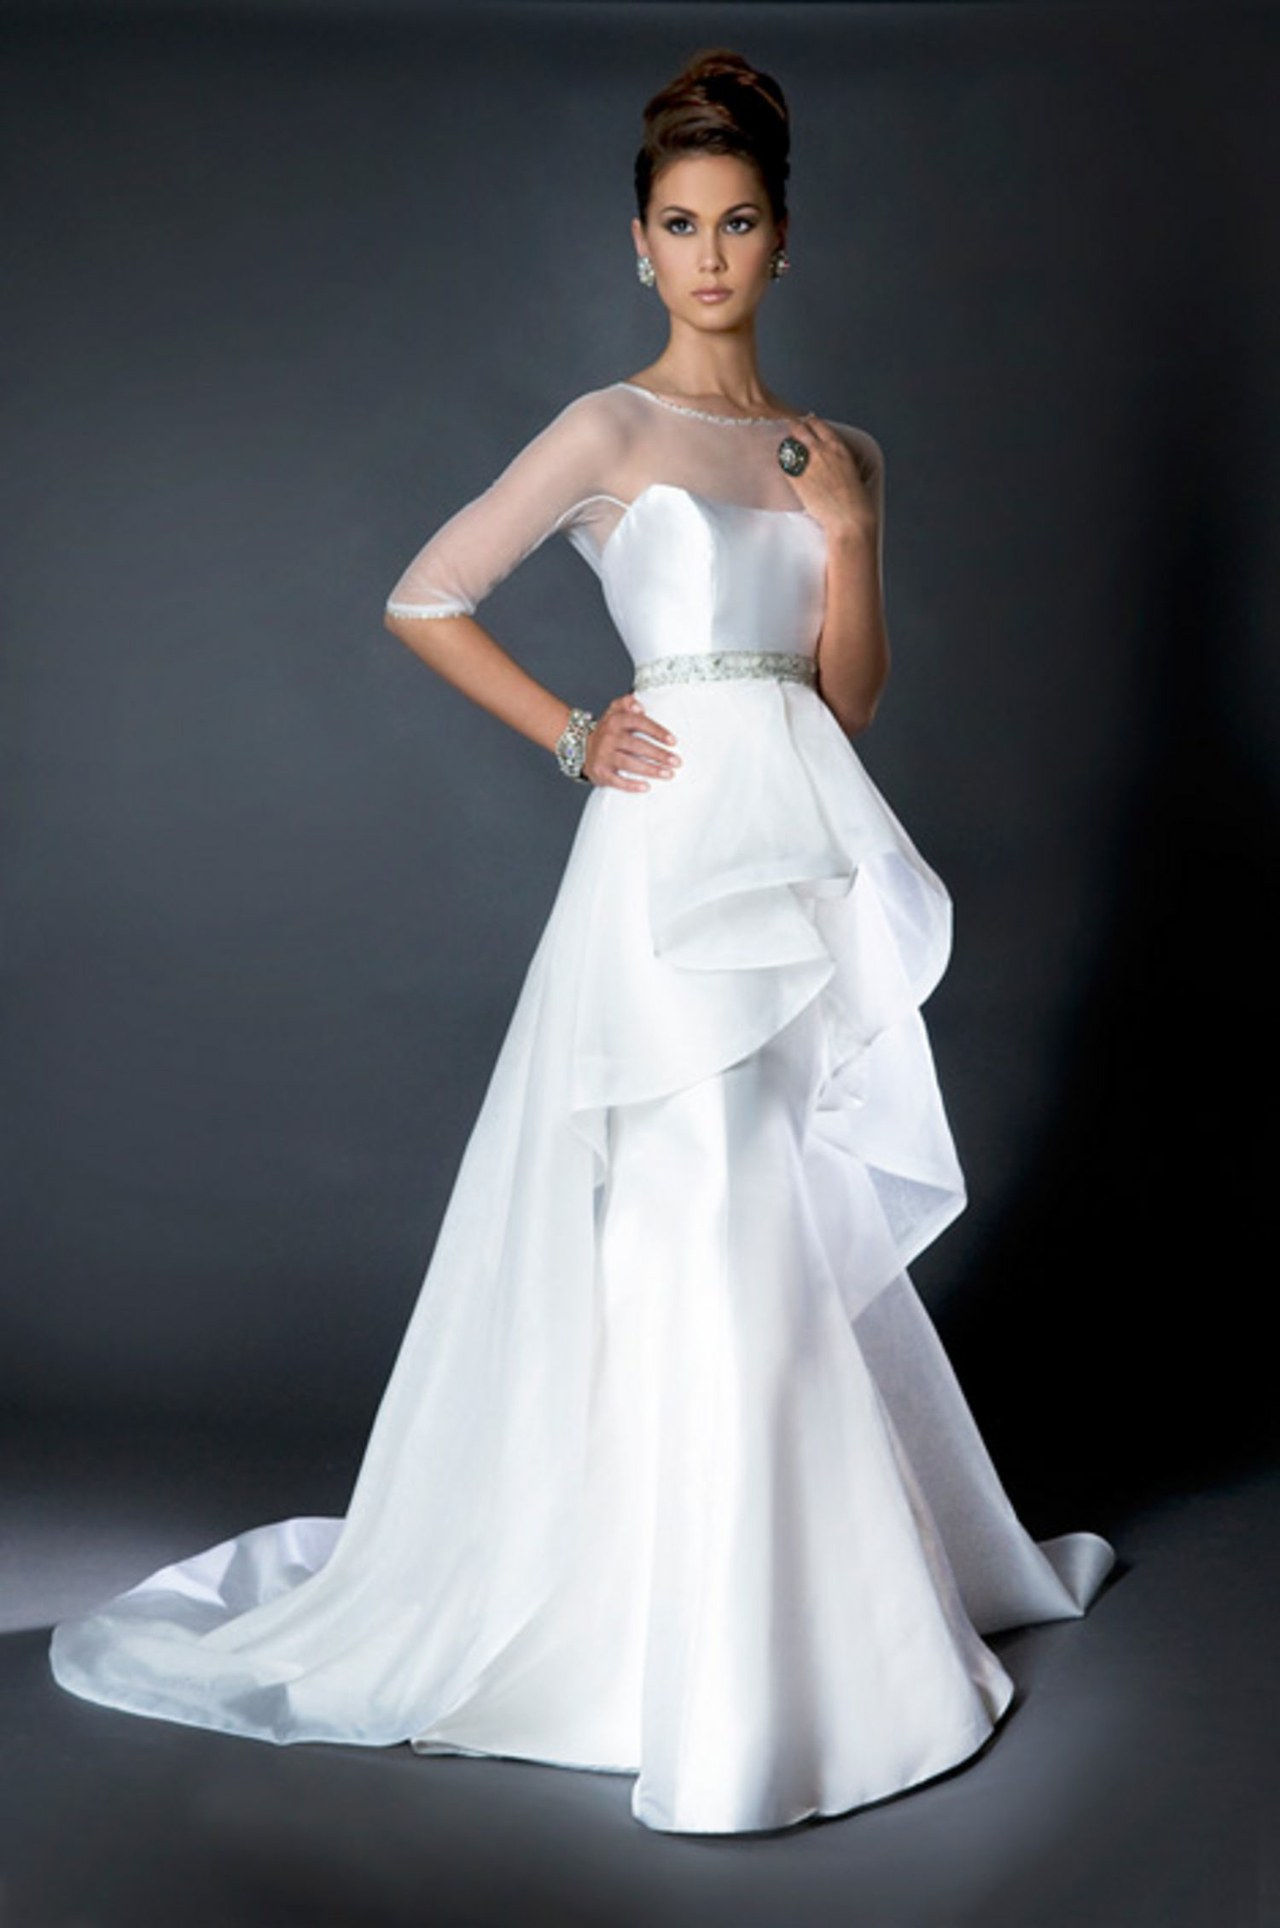 5 elizabeth taylor first wedding dresses inspired by wedding gowns conrad hilton celebrity weddings 0626